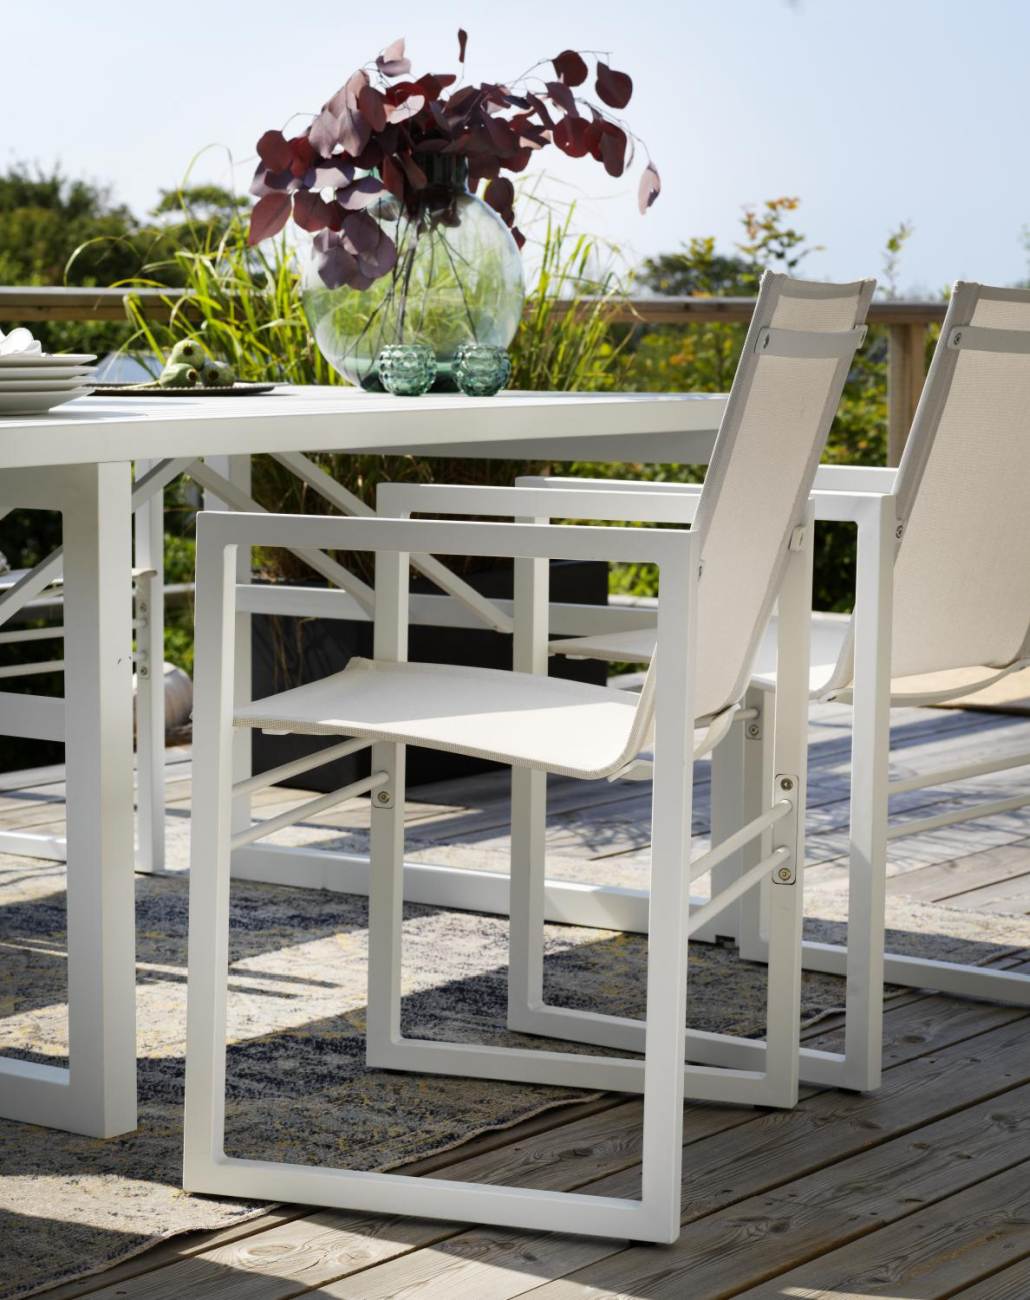 Der Gartenstuhl Vevi überzeugt mit seinem modernen Design. Gefertigt wurde er aus Textilene, welches einen weißen Farbton besitzt. Das Gestell ist aus Teakholz und hat eine weiße Farbe. Die Sitzhöhe des Stuhls beträgt 45 cm.